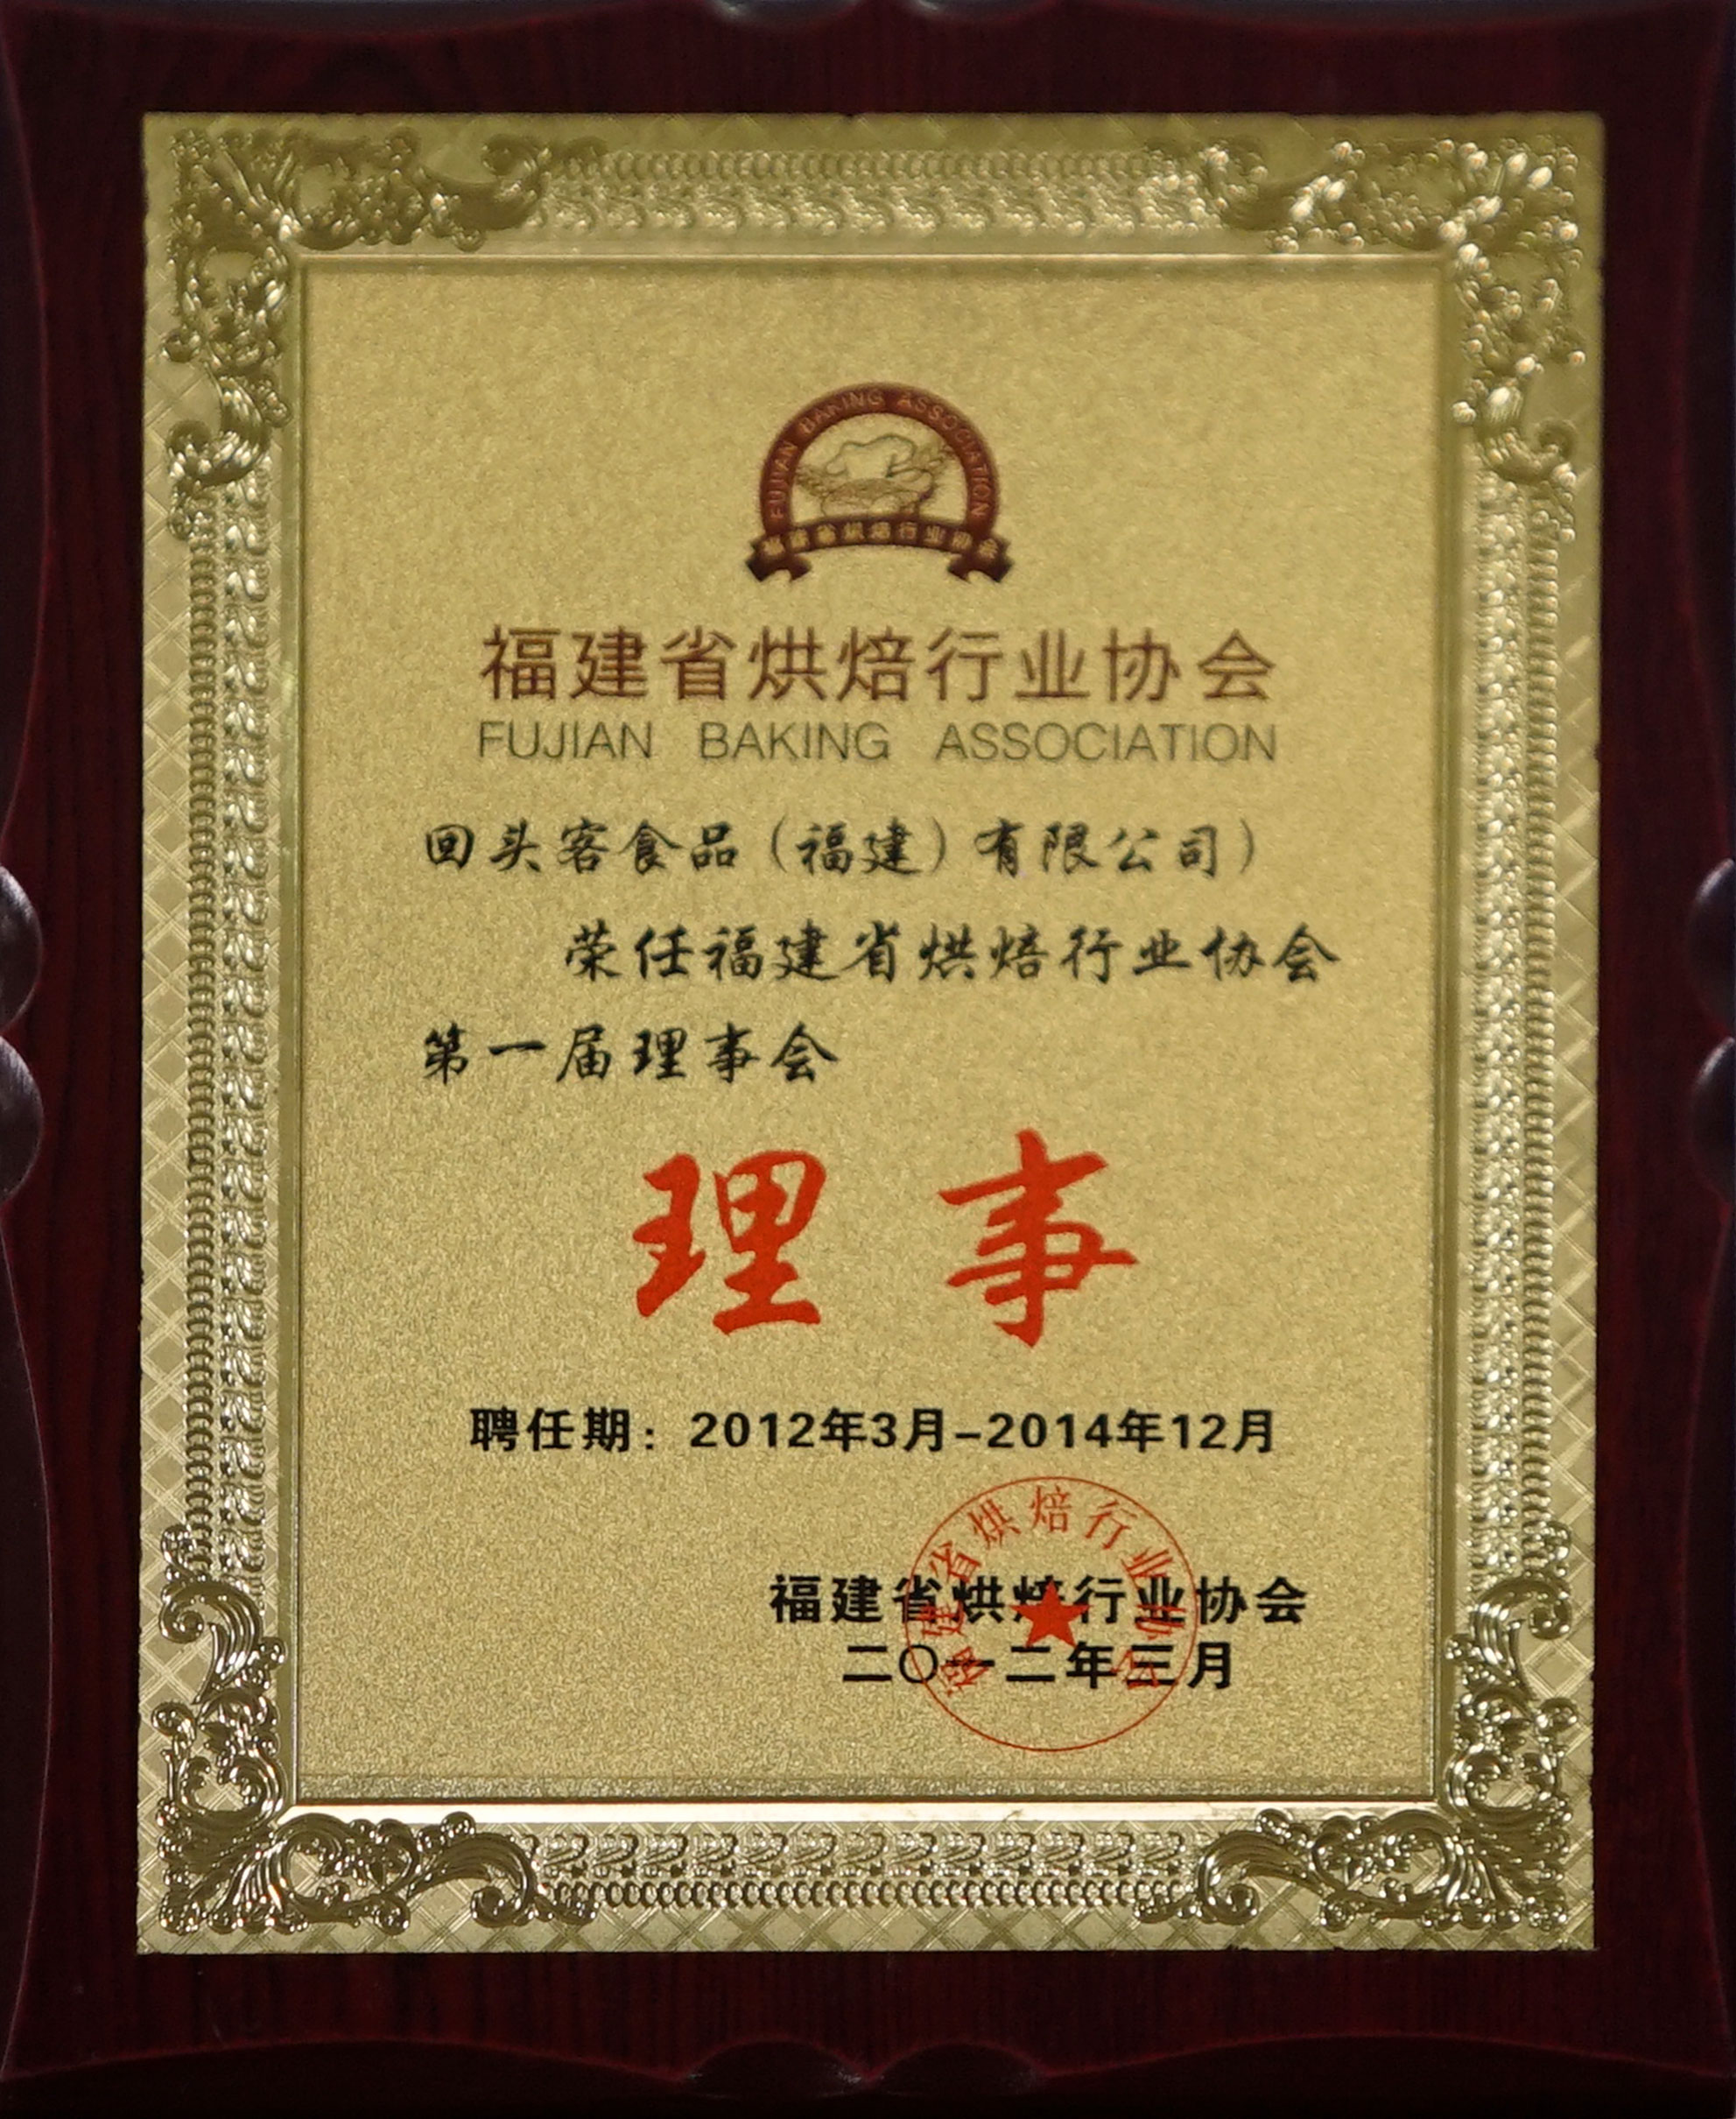 福建省烘焙行业协会第一届理事会理事